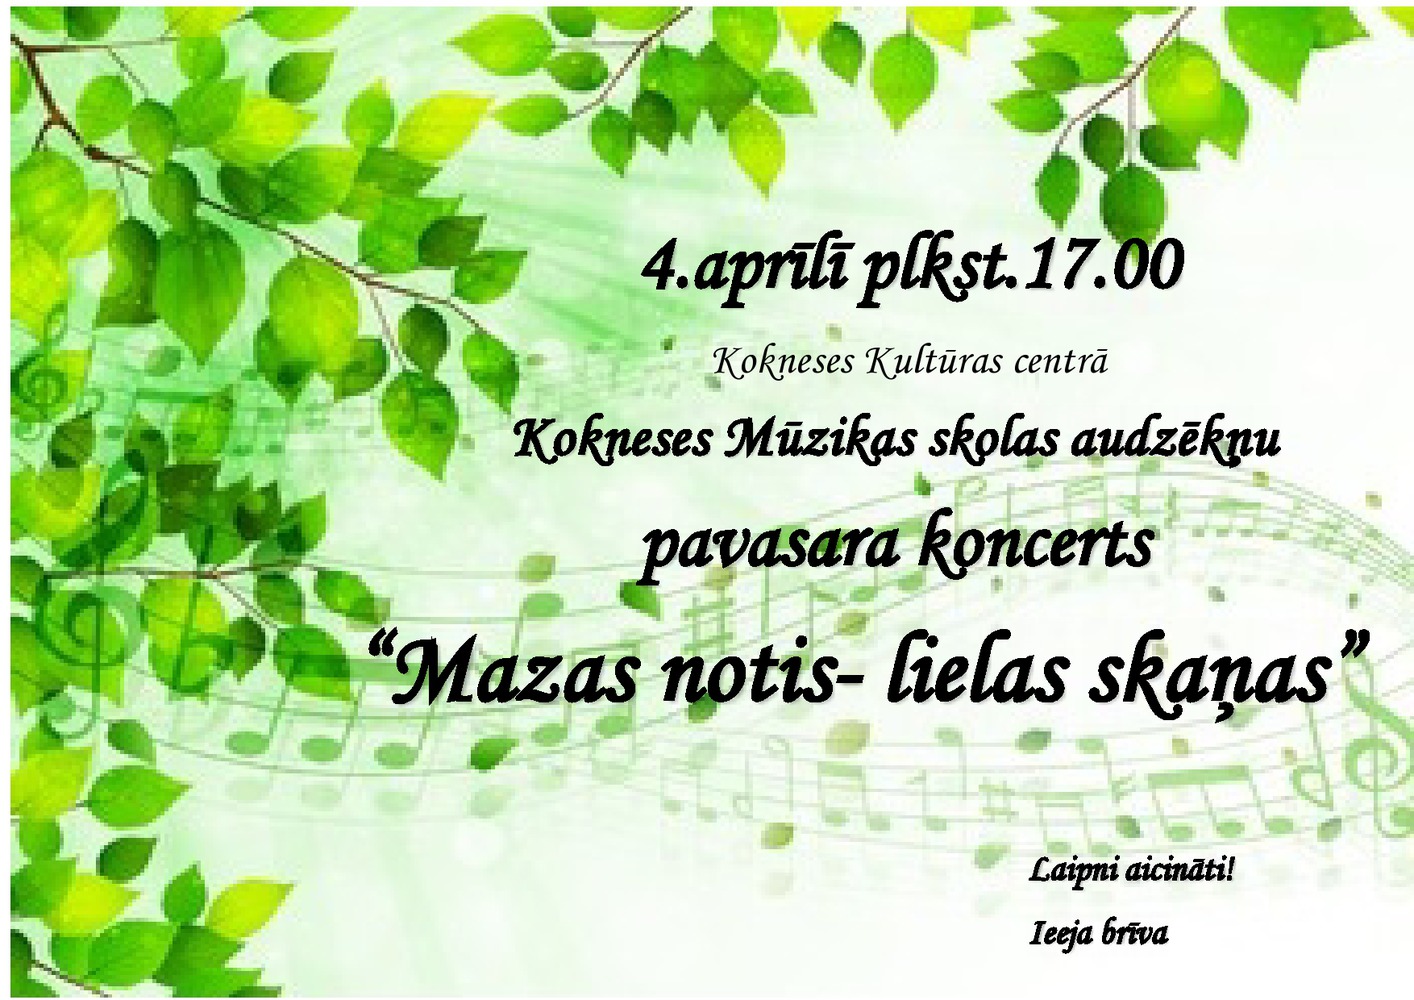 pavasara-koncerts-page0001-2.jpg